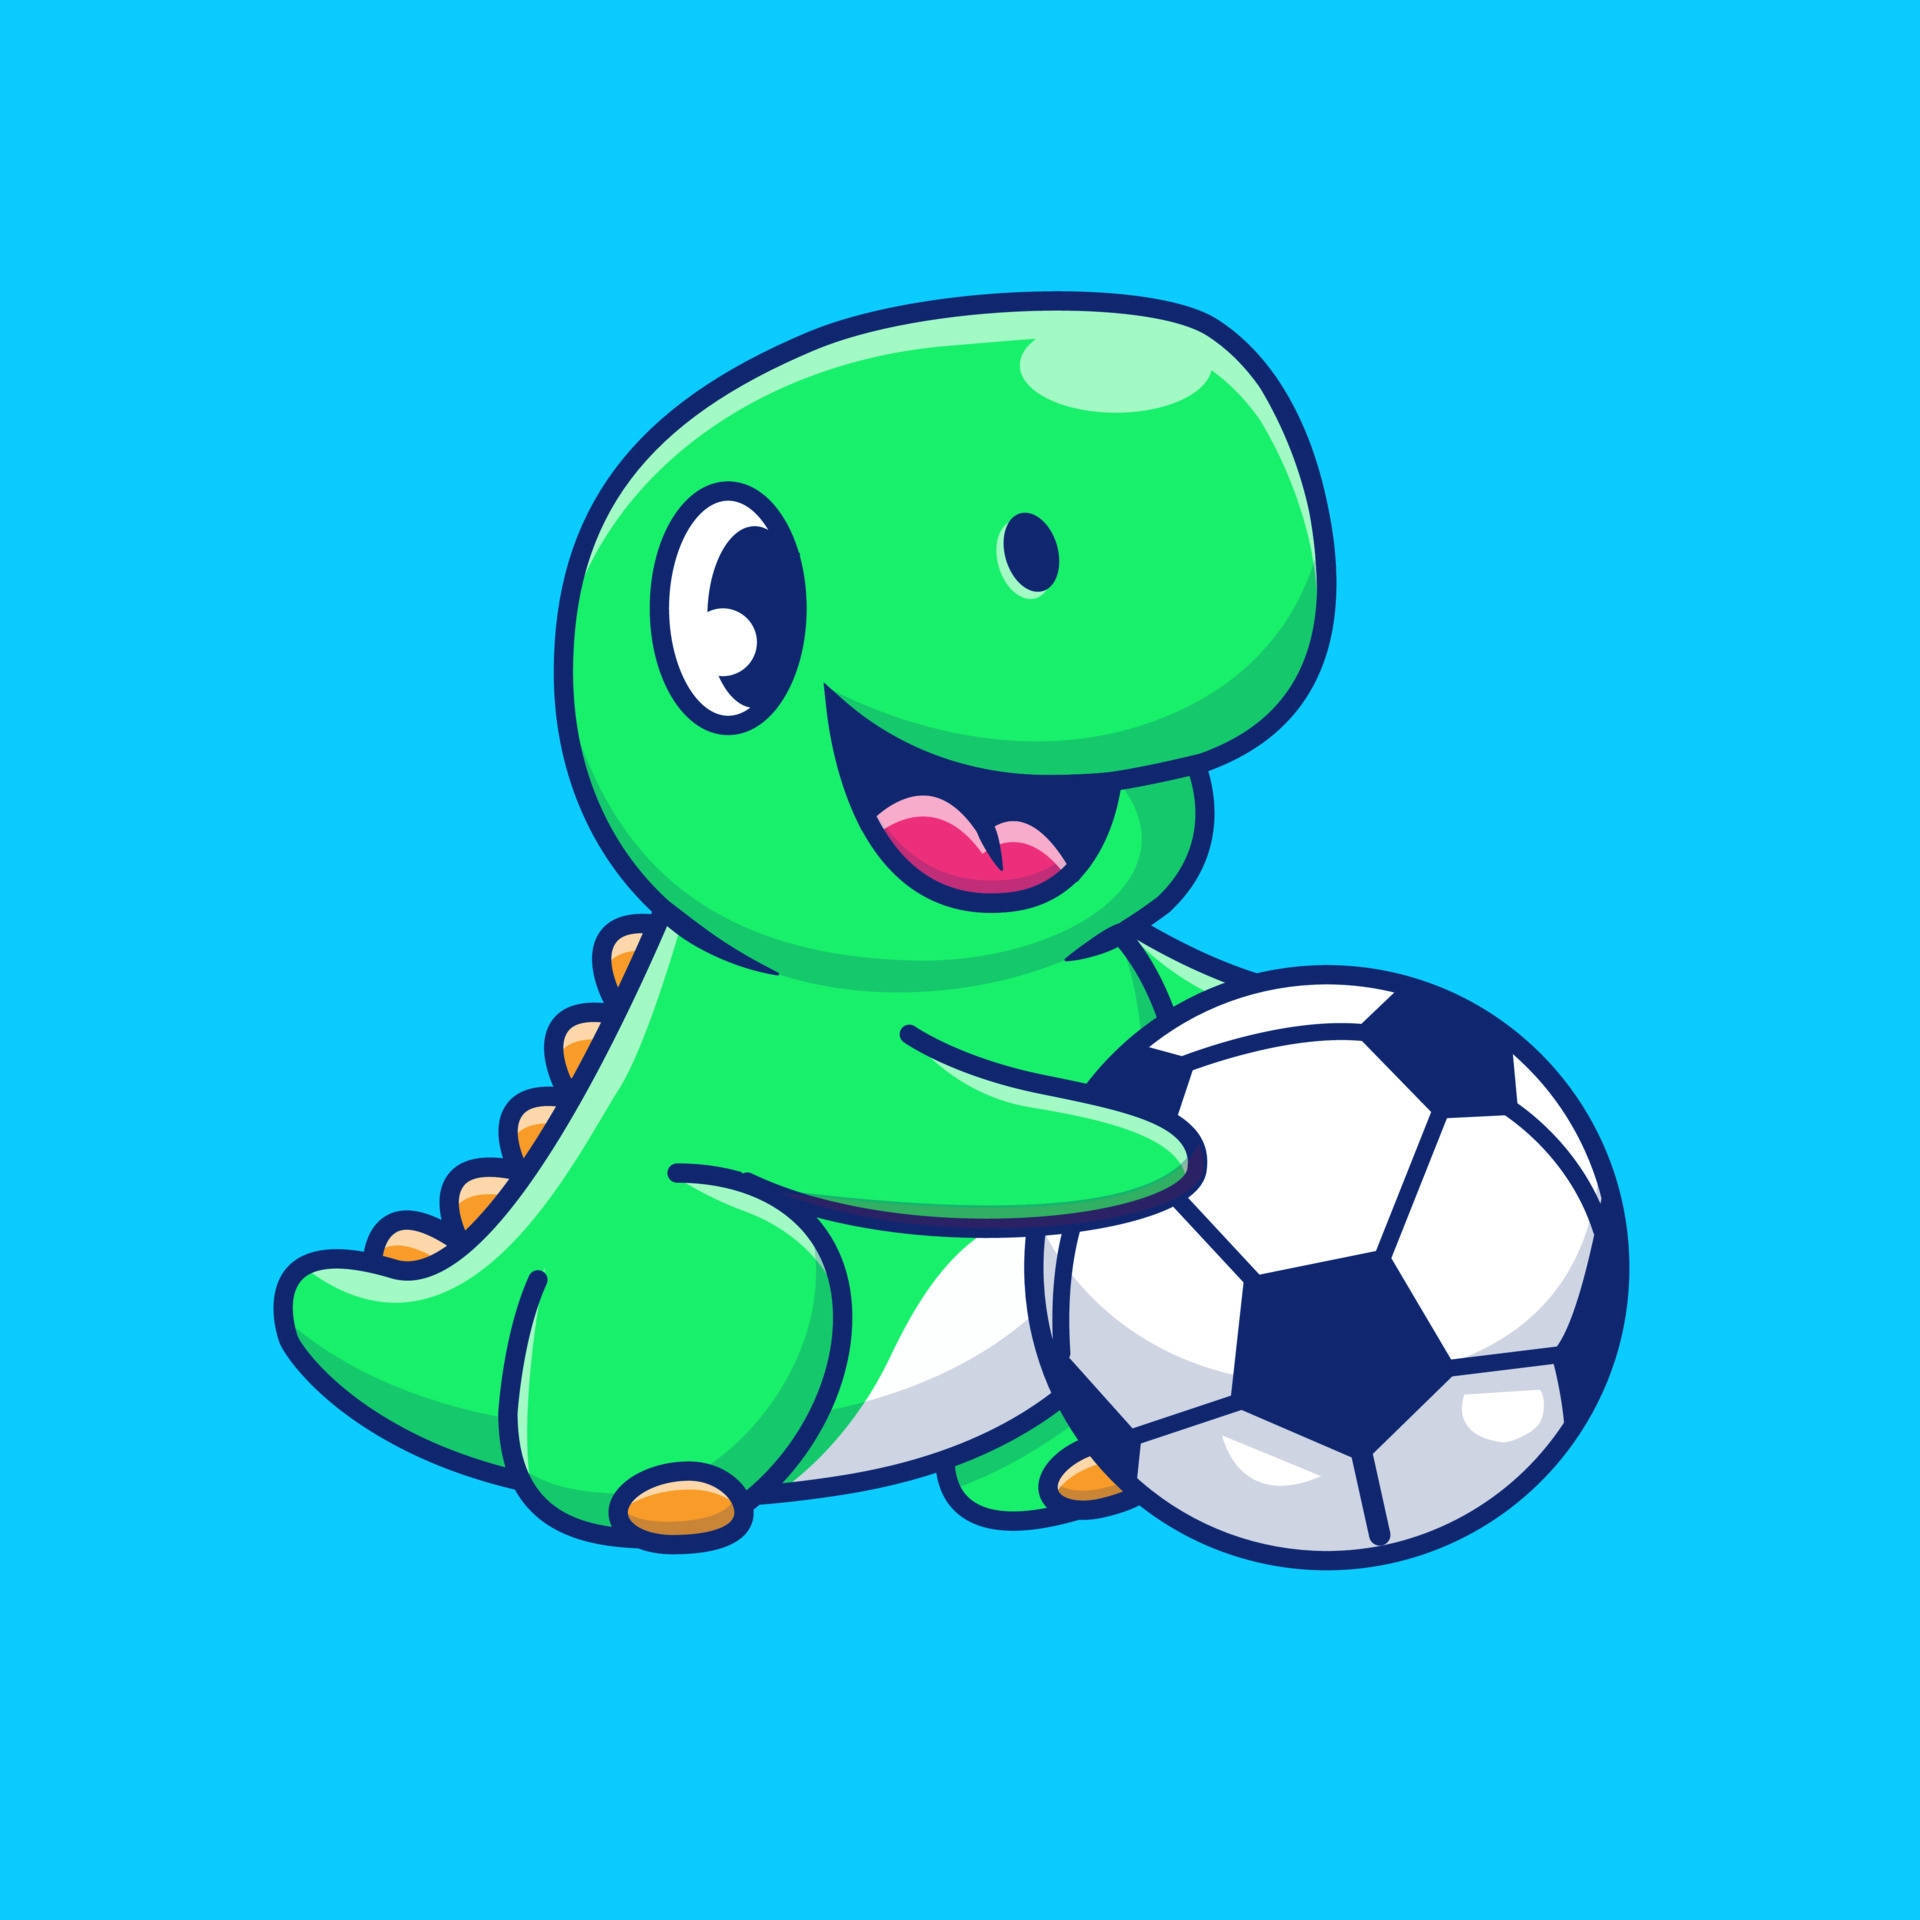 Fondode Pantalla De Fútbol Estético De Dinosaurio. Fondo de pantalla